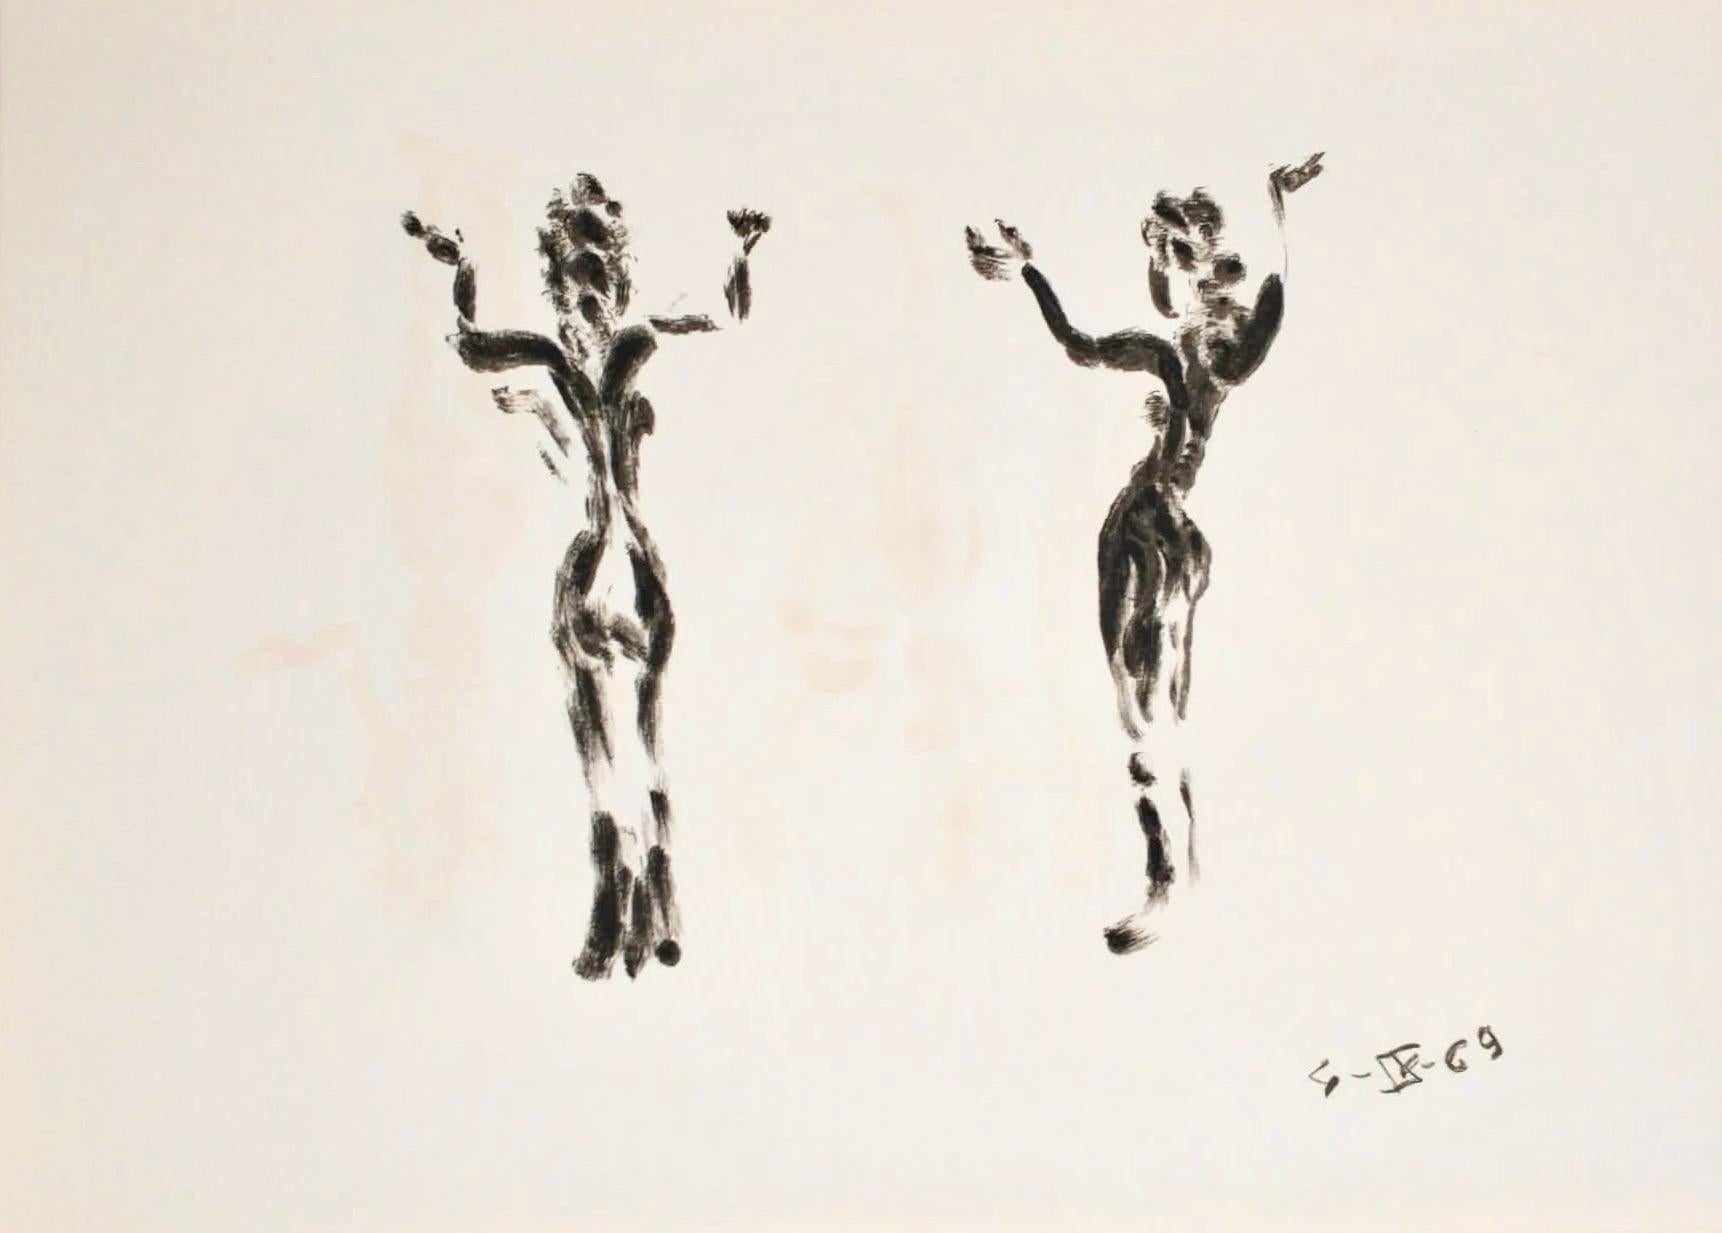 Apeles Fenosa, sculpteur espagnol Mourlot, lithographie - Figures expressionnistes abstraites